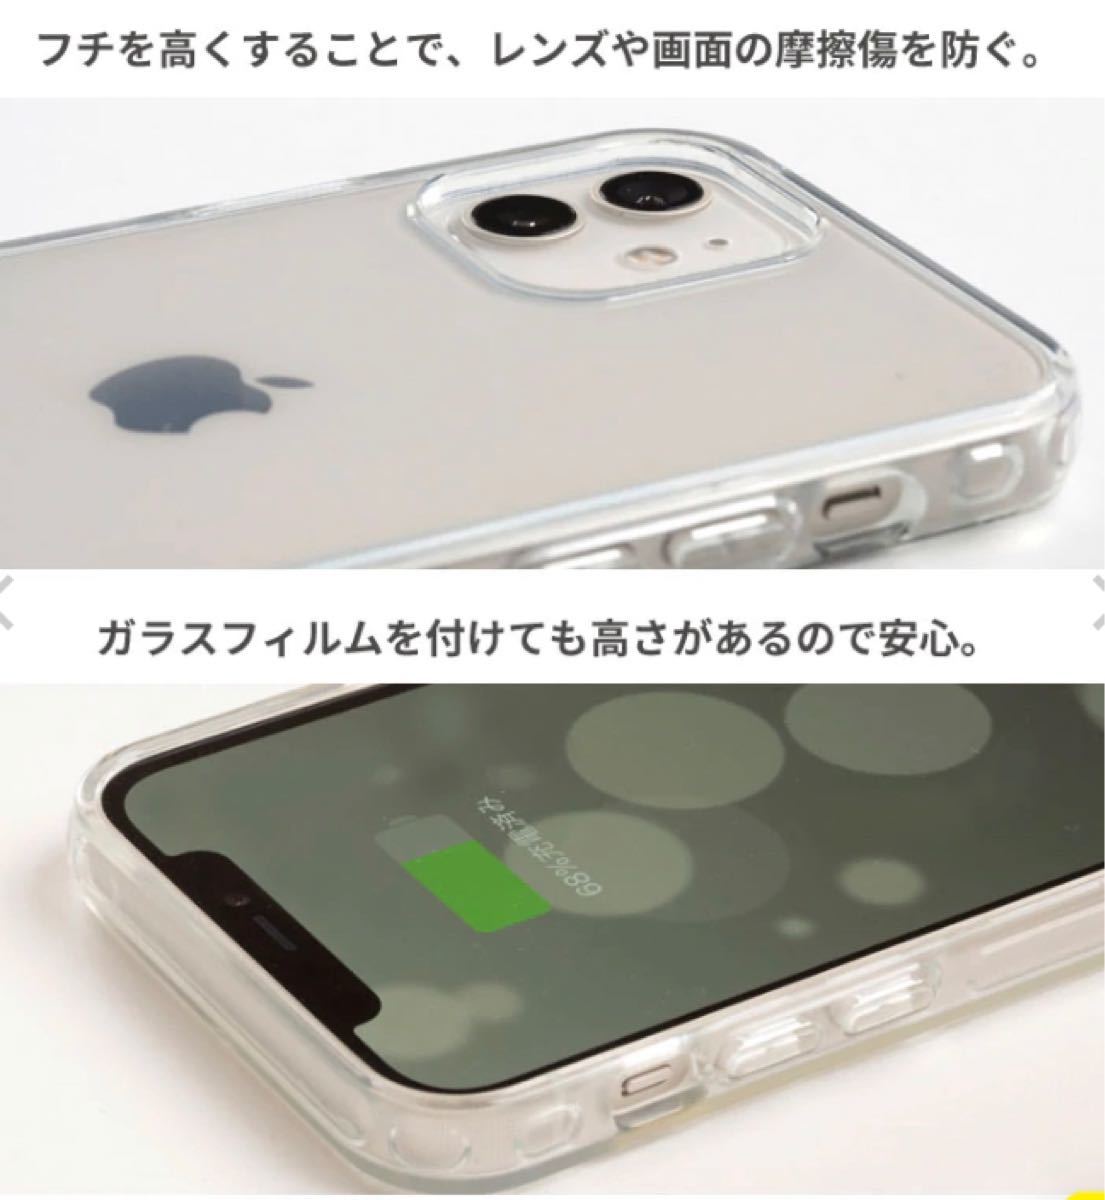 HIGHER ハイブリッドケース(クリア) iPhoneケース  iPhone7・8・SE 第2世代 第3世代 Hamee ハミィ